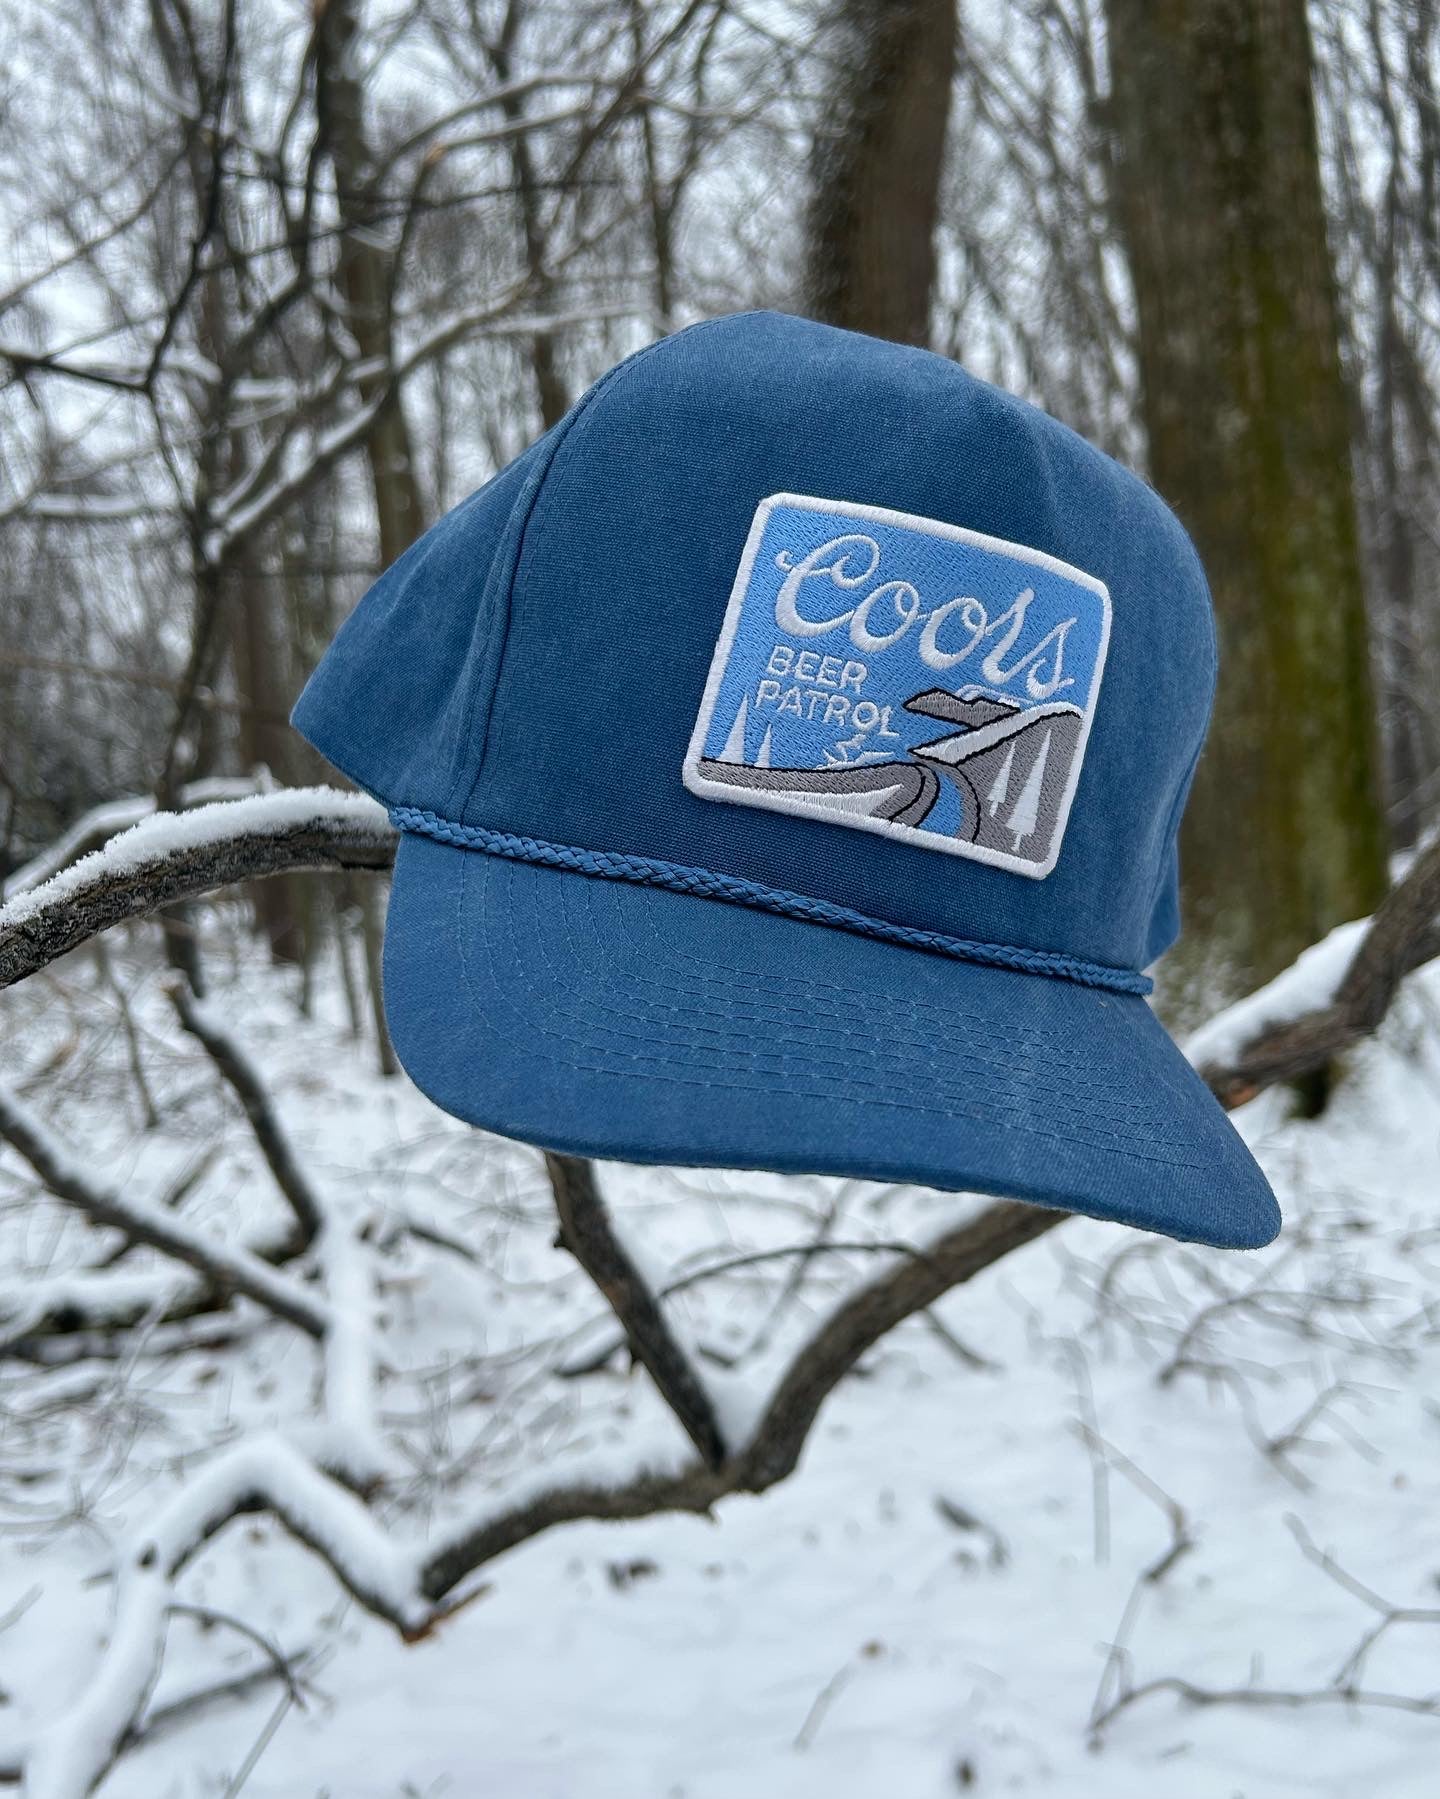 Coors Beer Patrol Snowmobile blue SnapBack hat